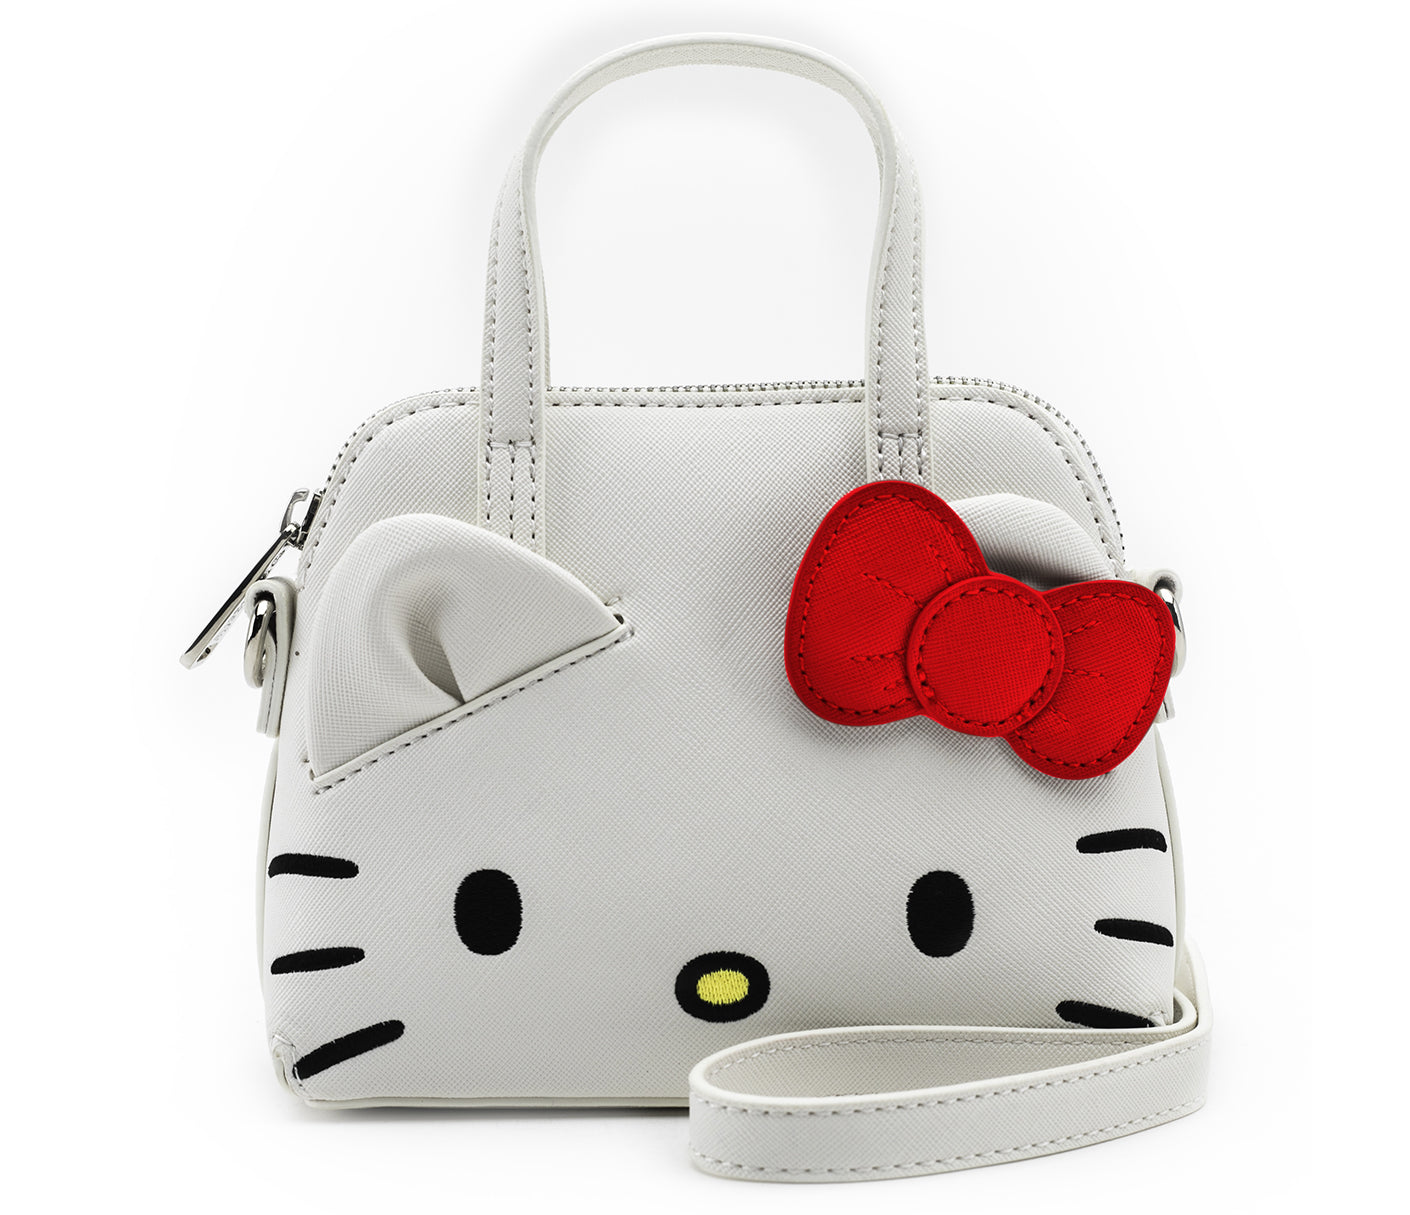 Сумка хеллоу. Сумка Loungefly hello Kitty. Sanrio hello Kitty сумка. Herschel x hello Kitty сумка.